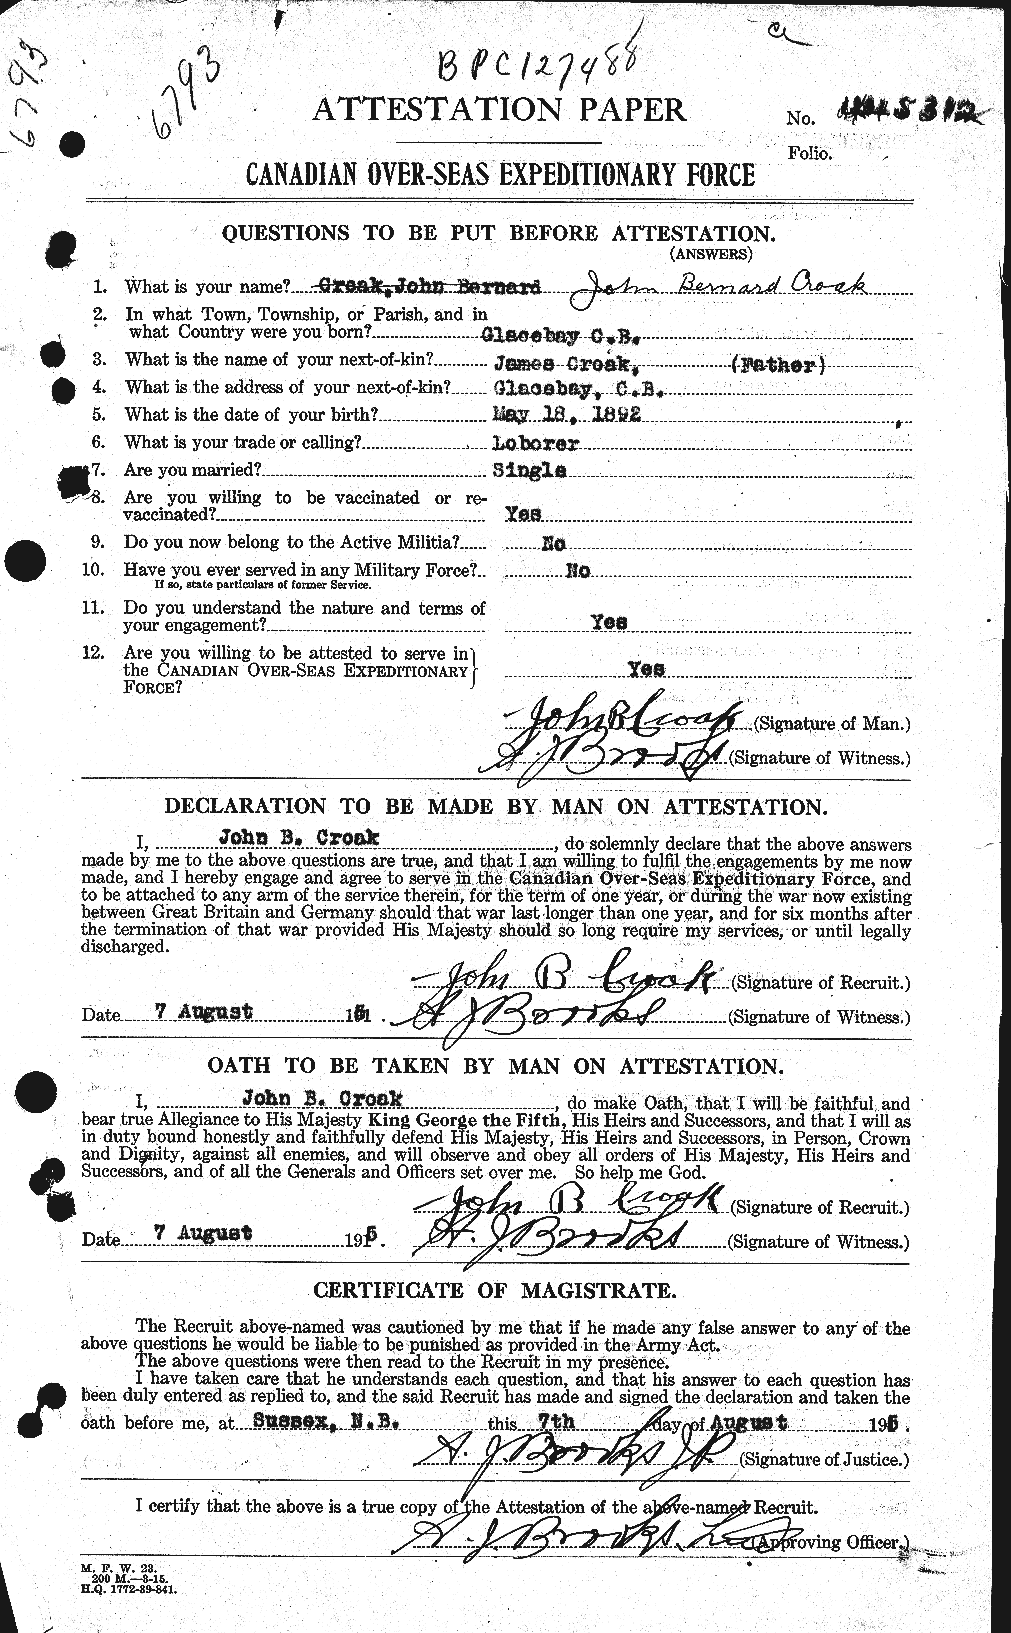 Dossiers du Personnel de la Première Guerre mondiale - CEC 065008a